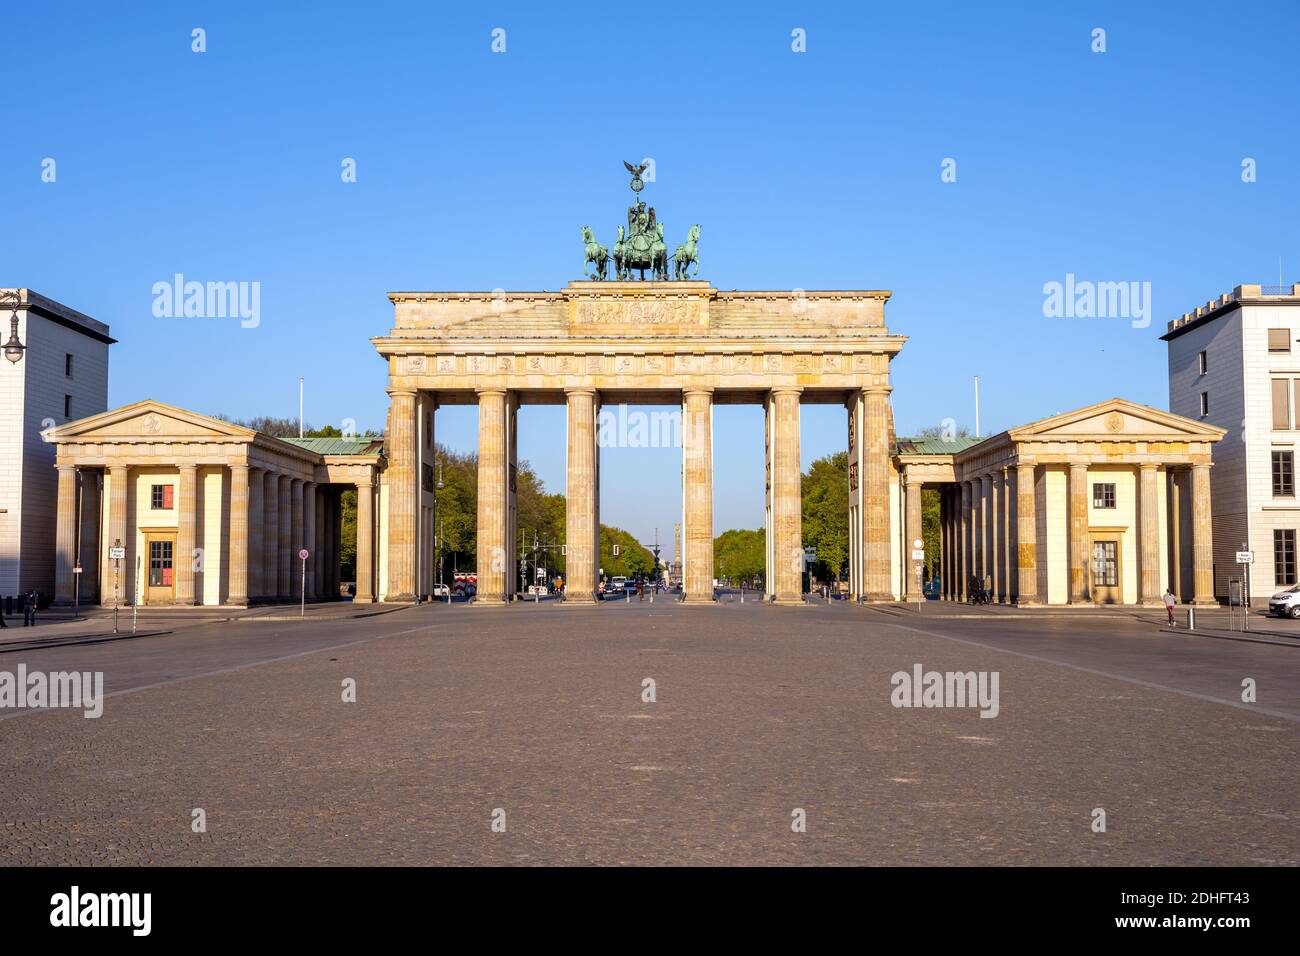 Panorama des berühmten Brandenburger Tors in Berlin ohne Menschen Stockfoto